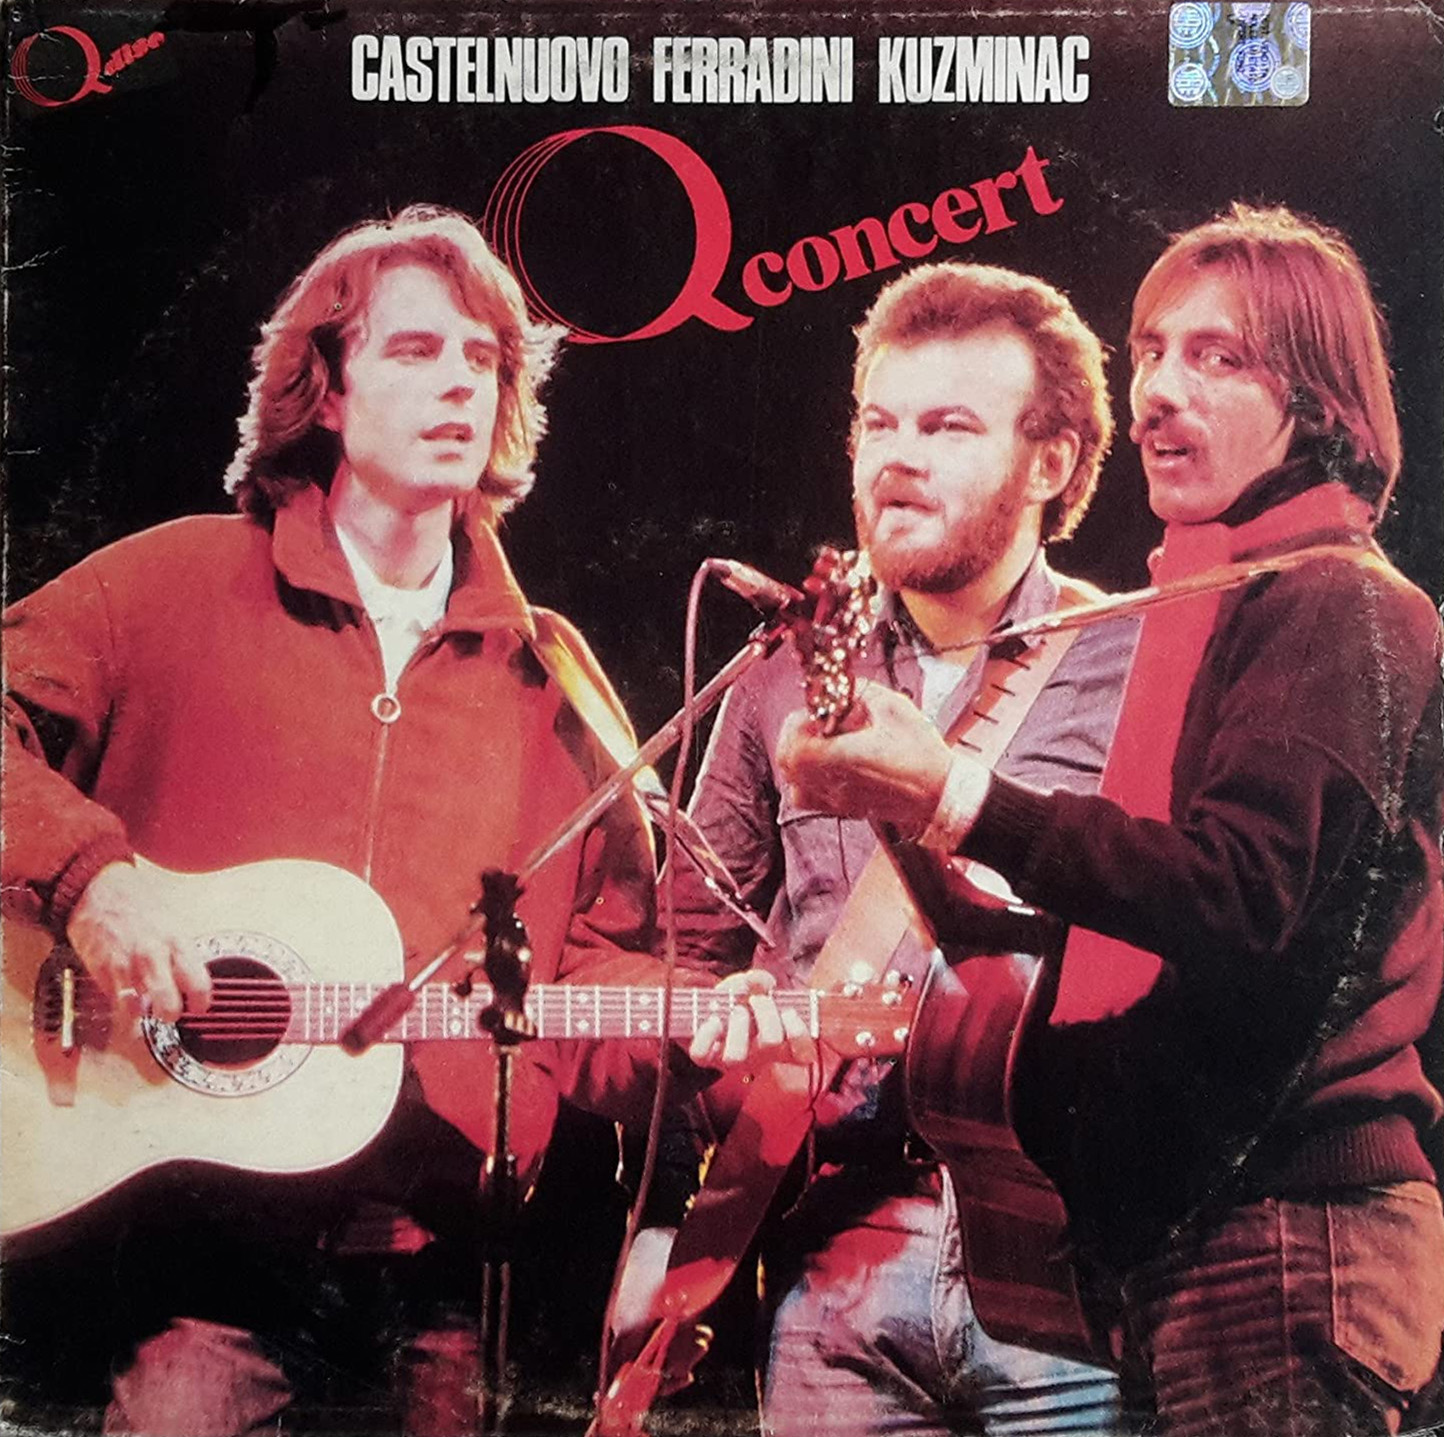 Q concert – Castelnuovo Ferradini Kusminac (1982) - Cover